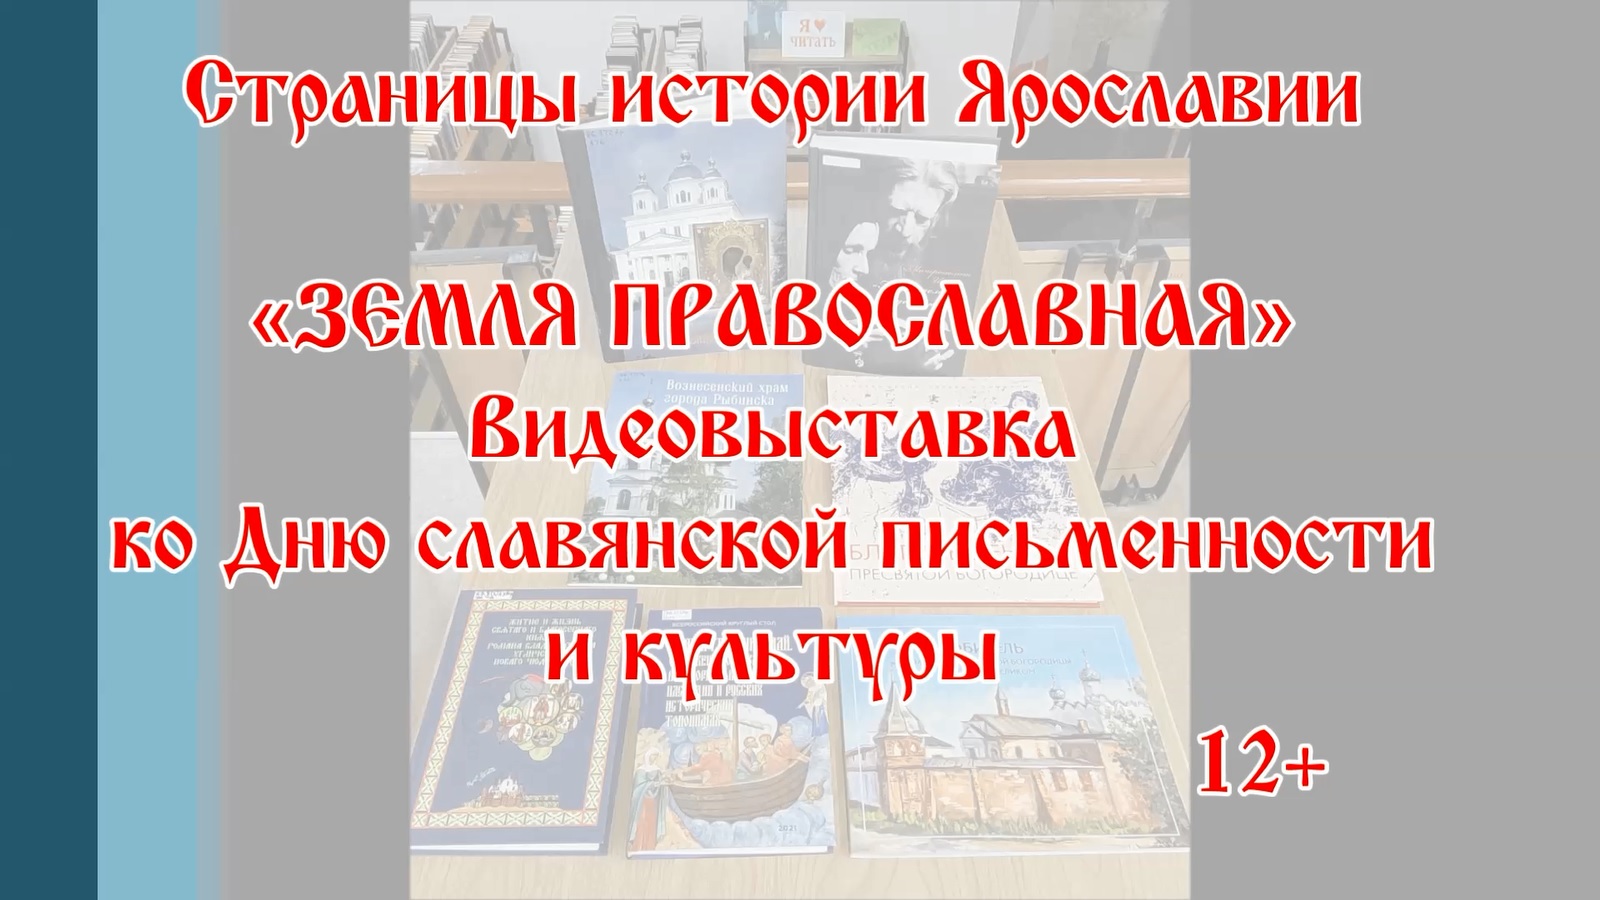 Видеовыставка краеведческой литературы «Страницы истории Ярославии. Земля православная»